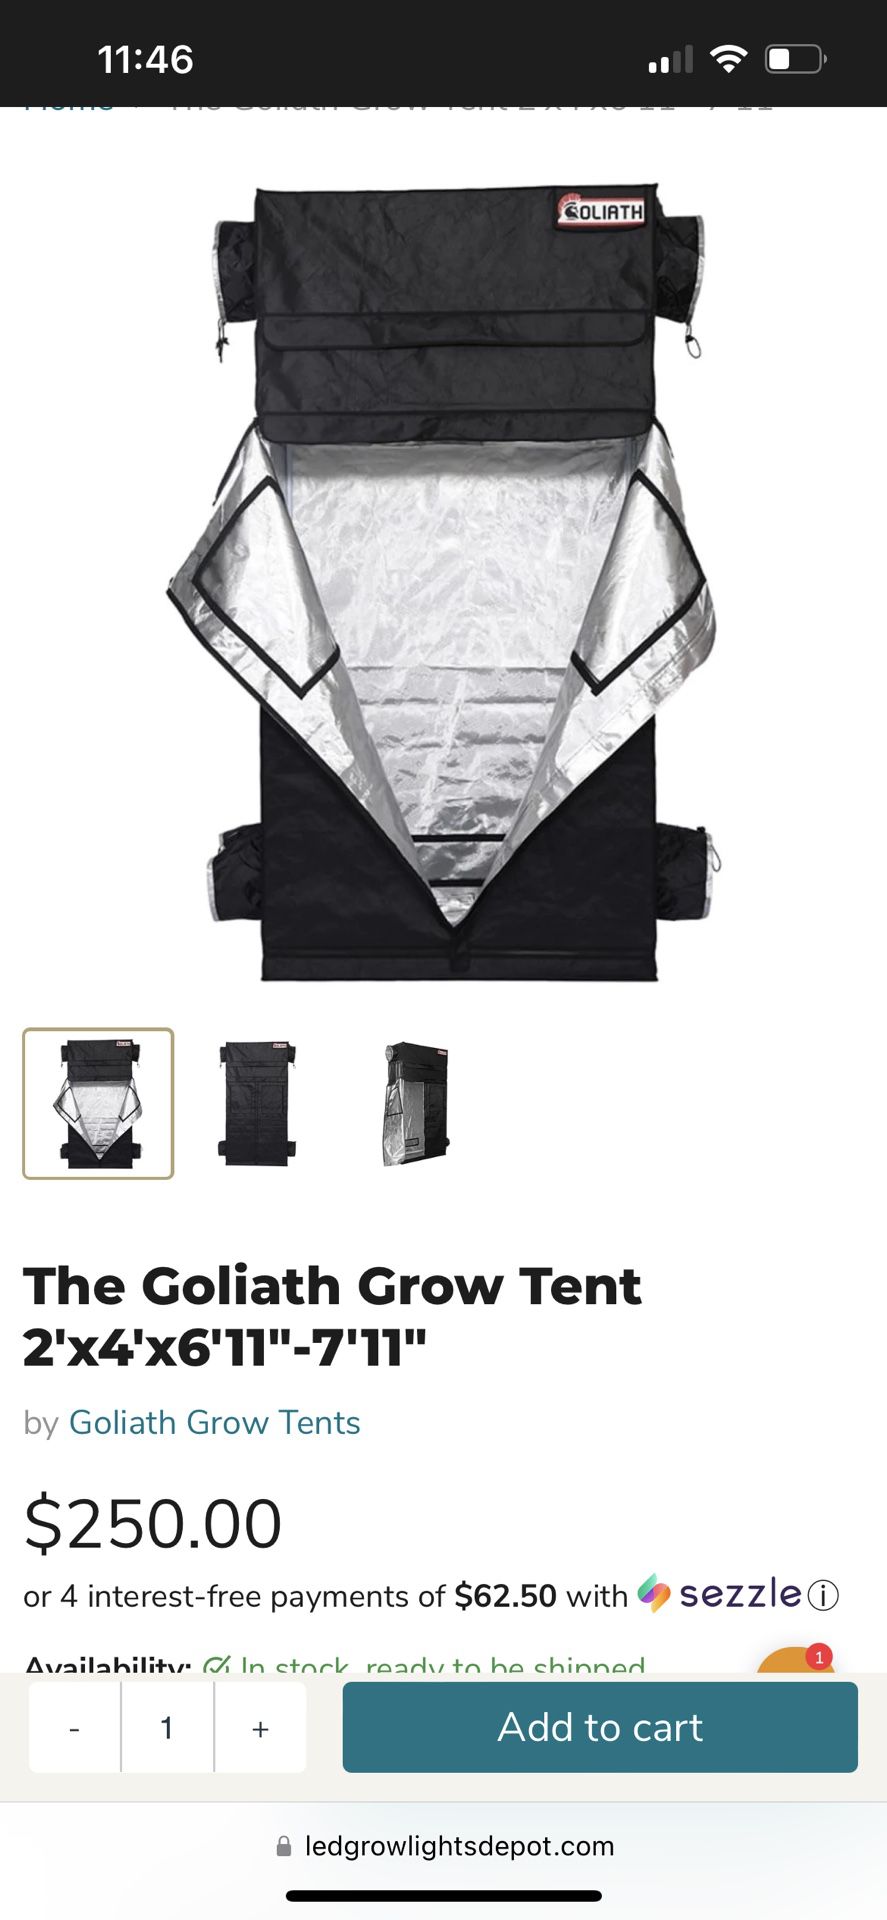 Grow Tent 2x4x6